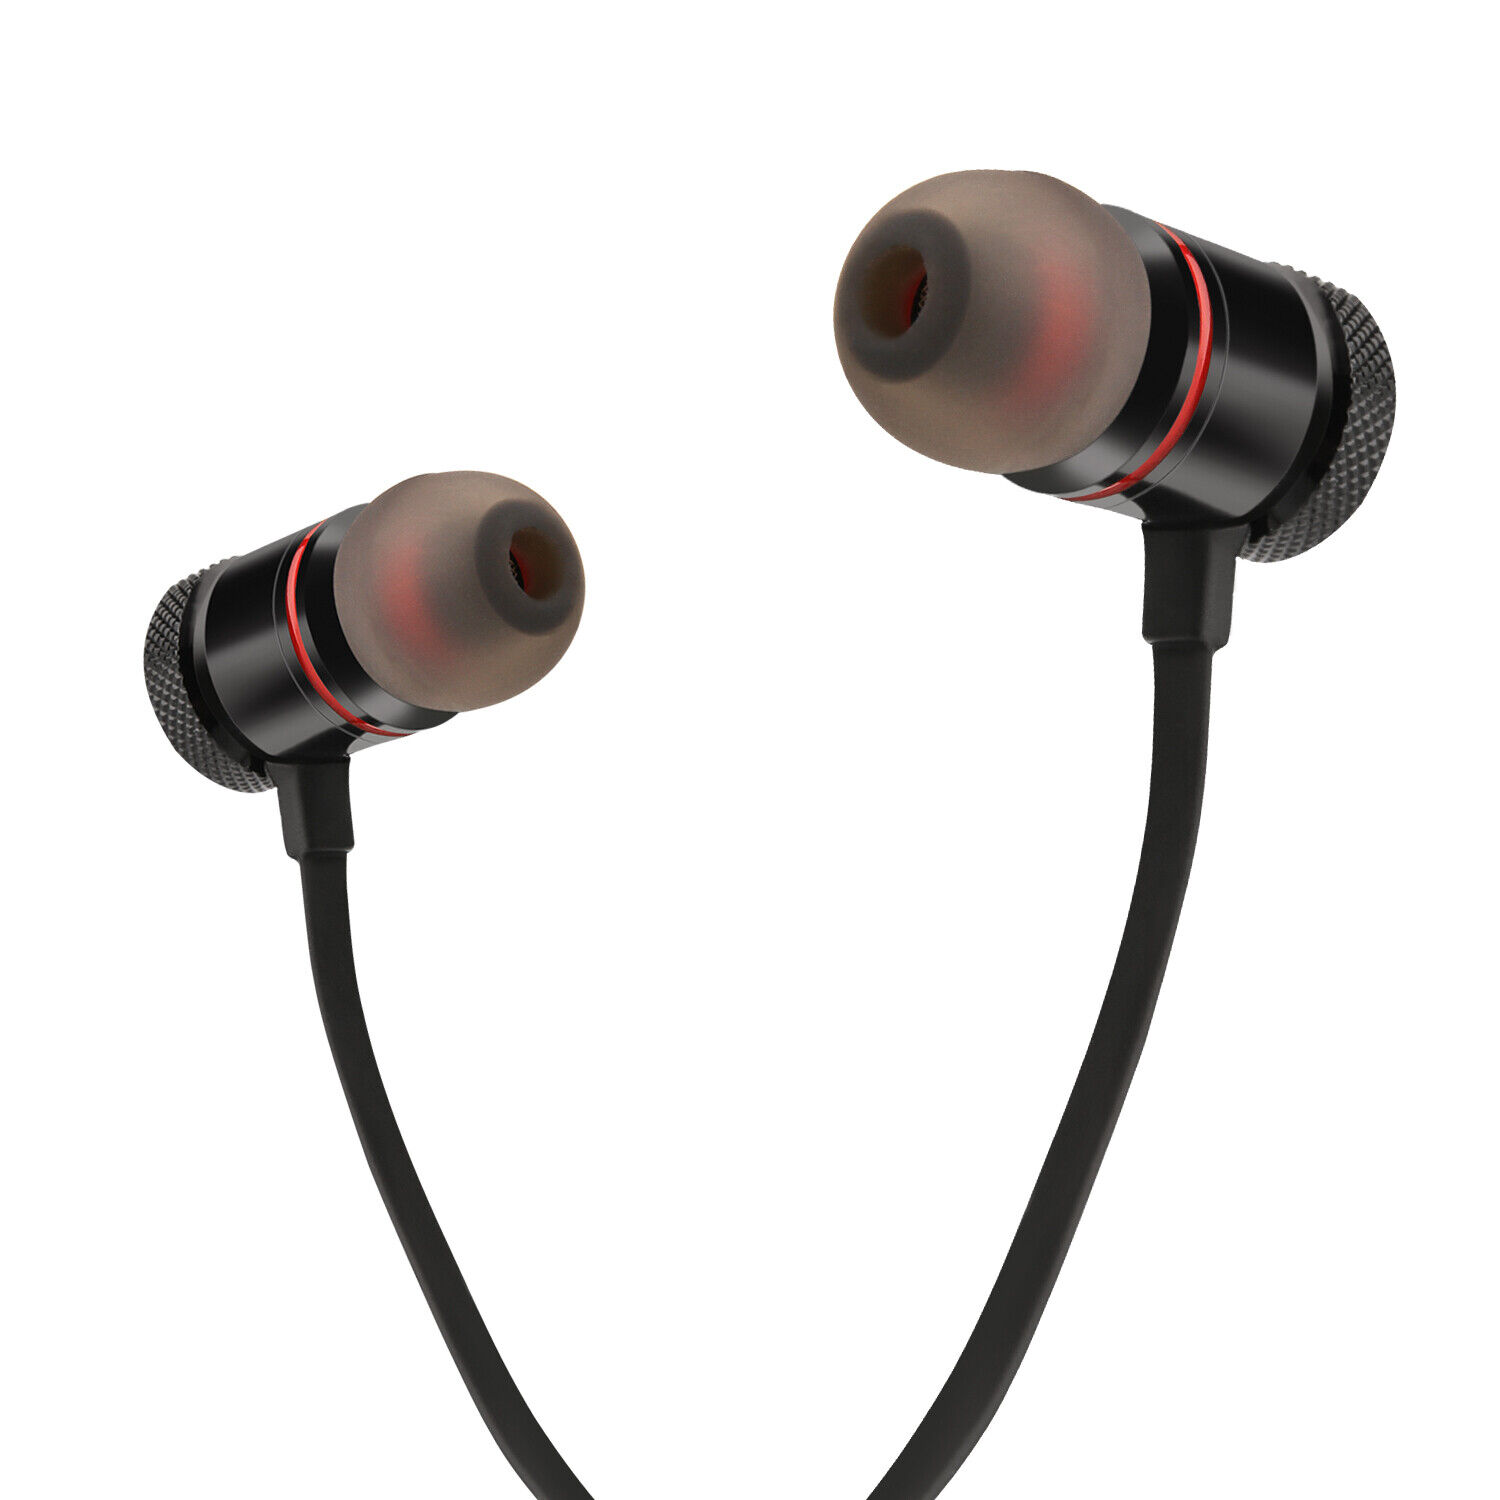 Waterproof Bluetooth Earbuds HD Stereo Sport Wireless Headphones in Ear Headsets Agptek Does Not Apply - фотография #8